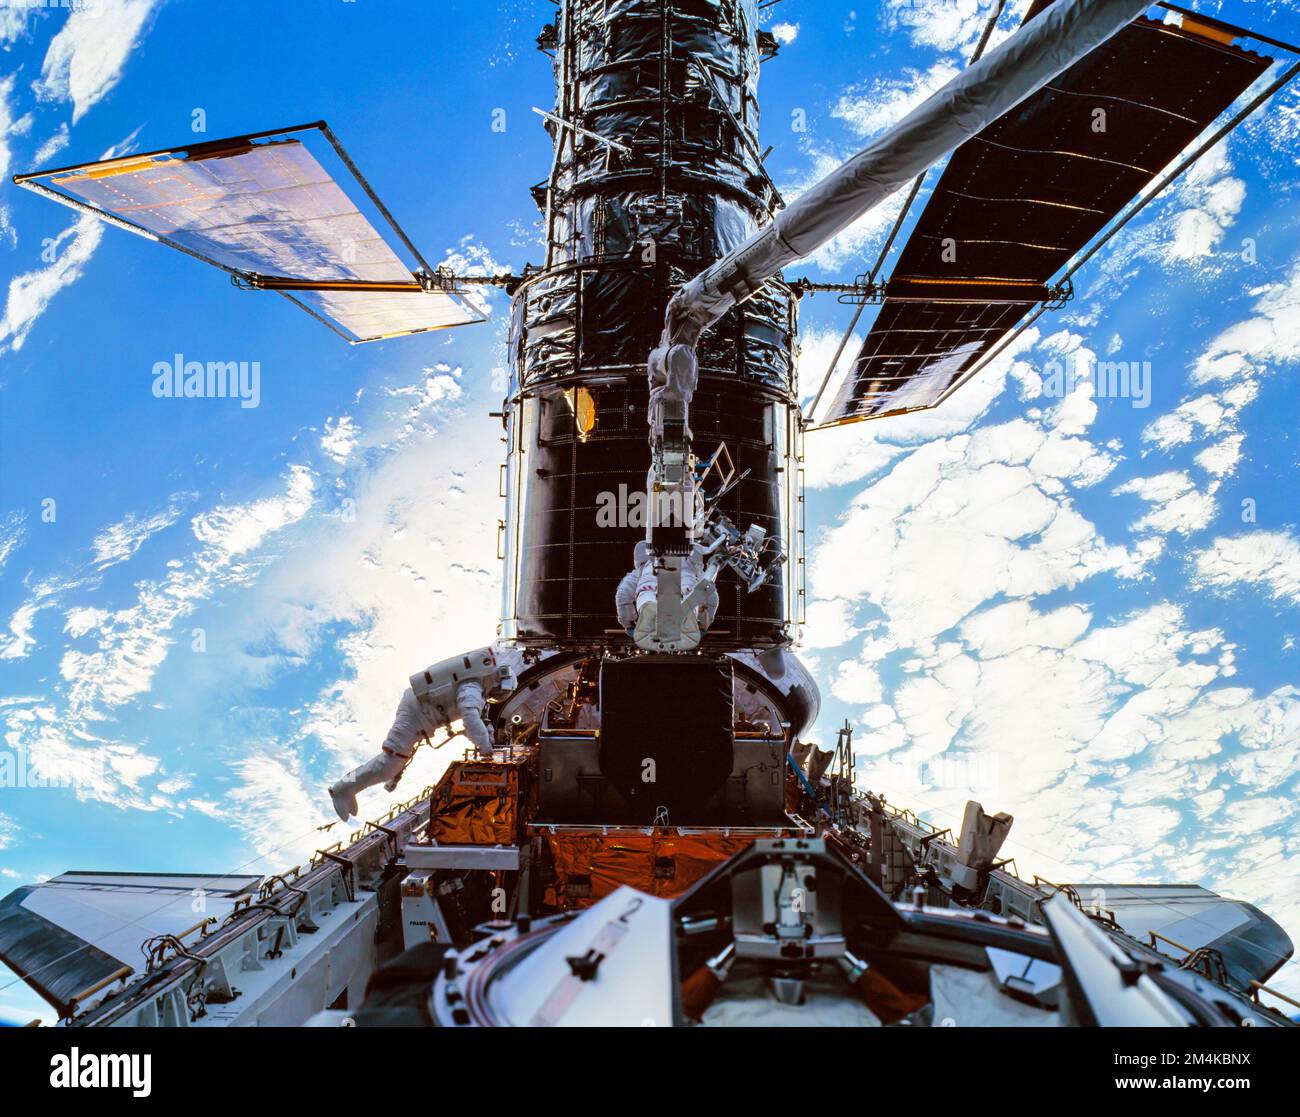 Les astronautes qui s'occupent du télescope Hubble dans l'espace. Planète Terre vue en arrière-plan. Amélioration numérique. Éléments de cette image fournis par la NASA. Banque D'Images